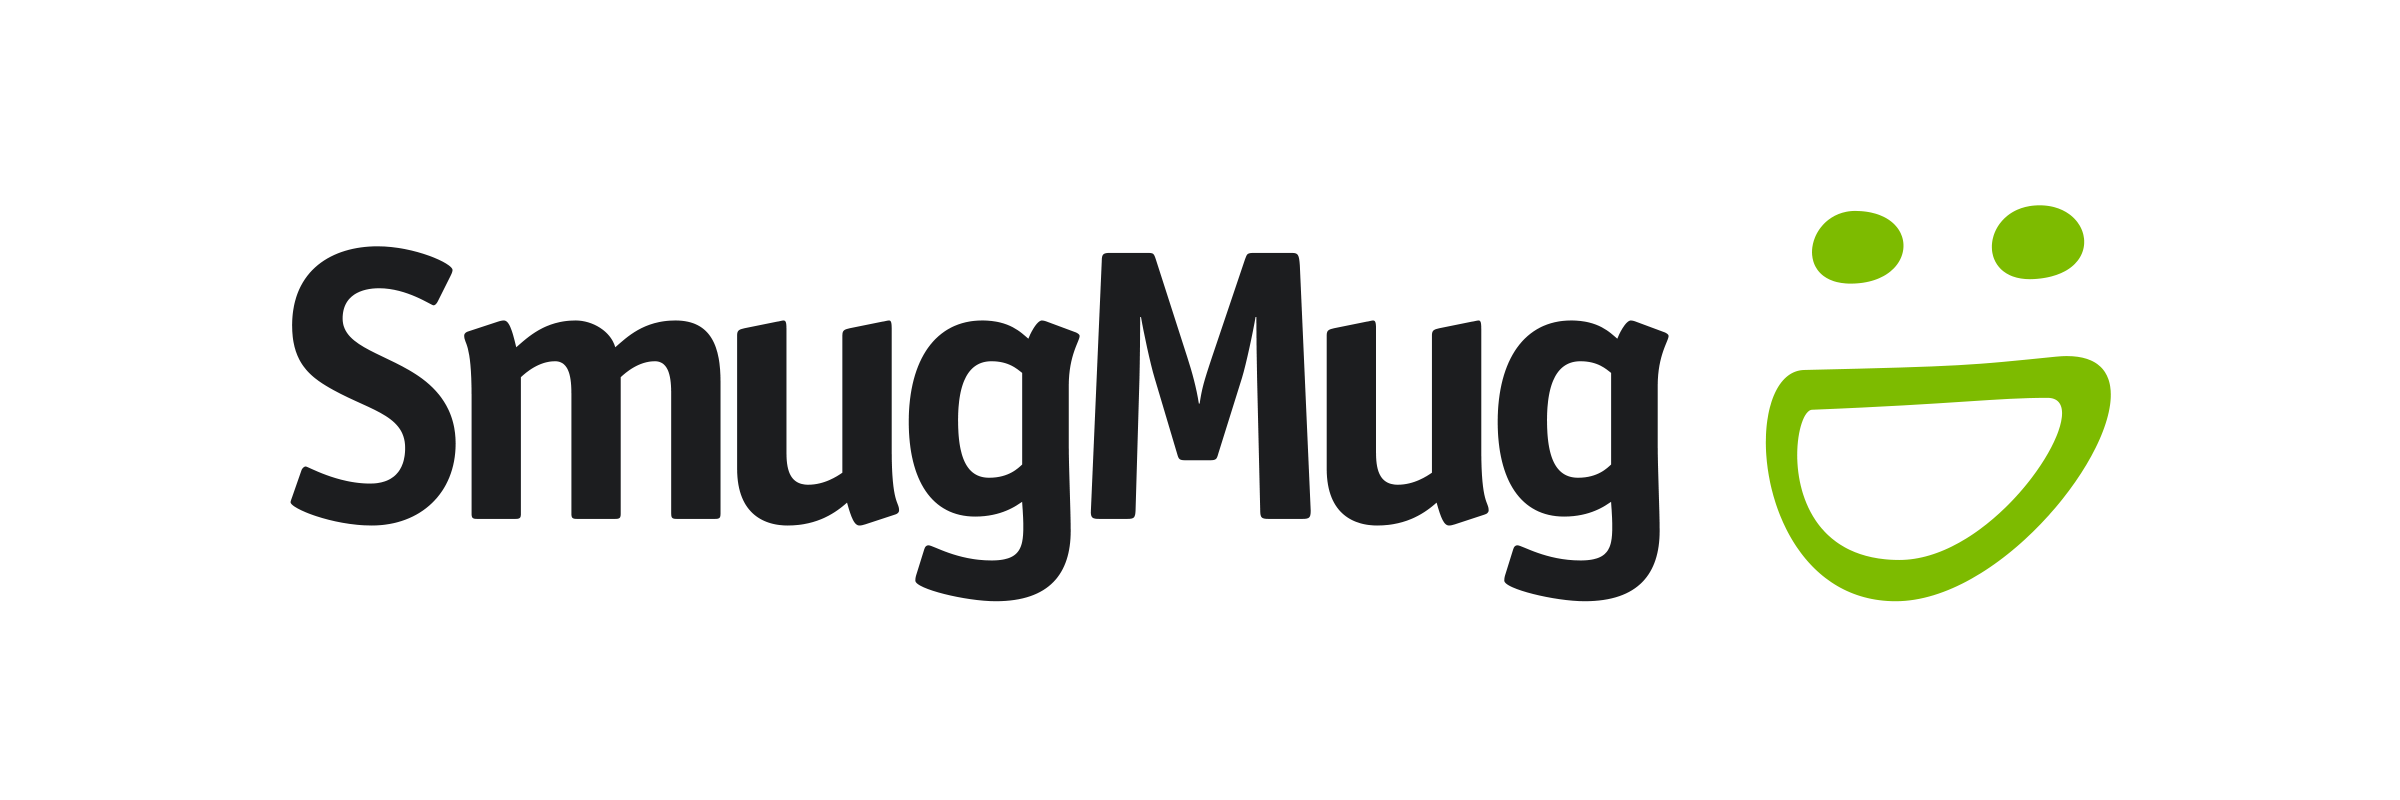 Sell Photos Online with SmugMug